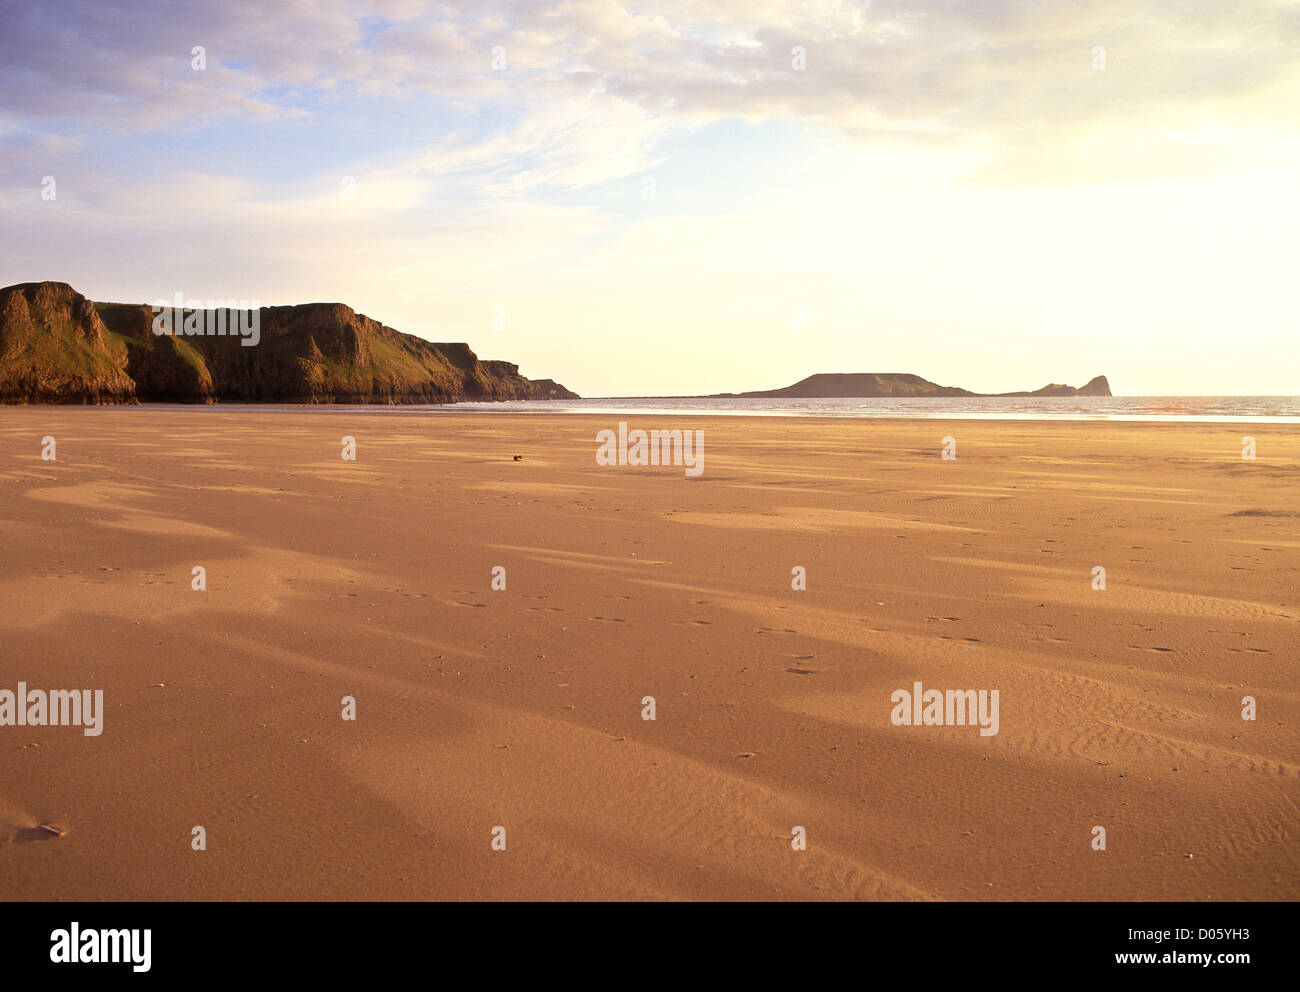 La tête du ver de Rhossili beach au coucher du soleil avec des schémas inhabituels dans le sable en premier plan Gower Peninsula South Wales UK Banque D'Images